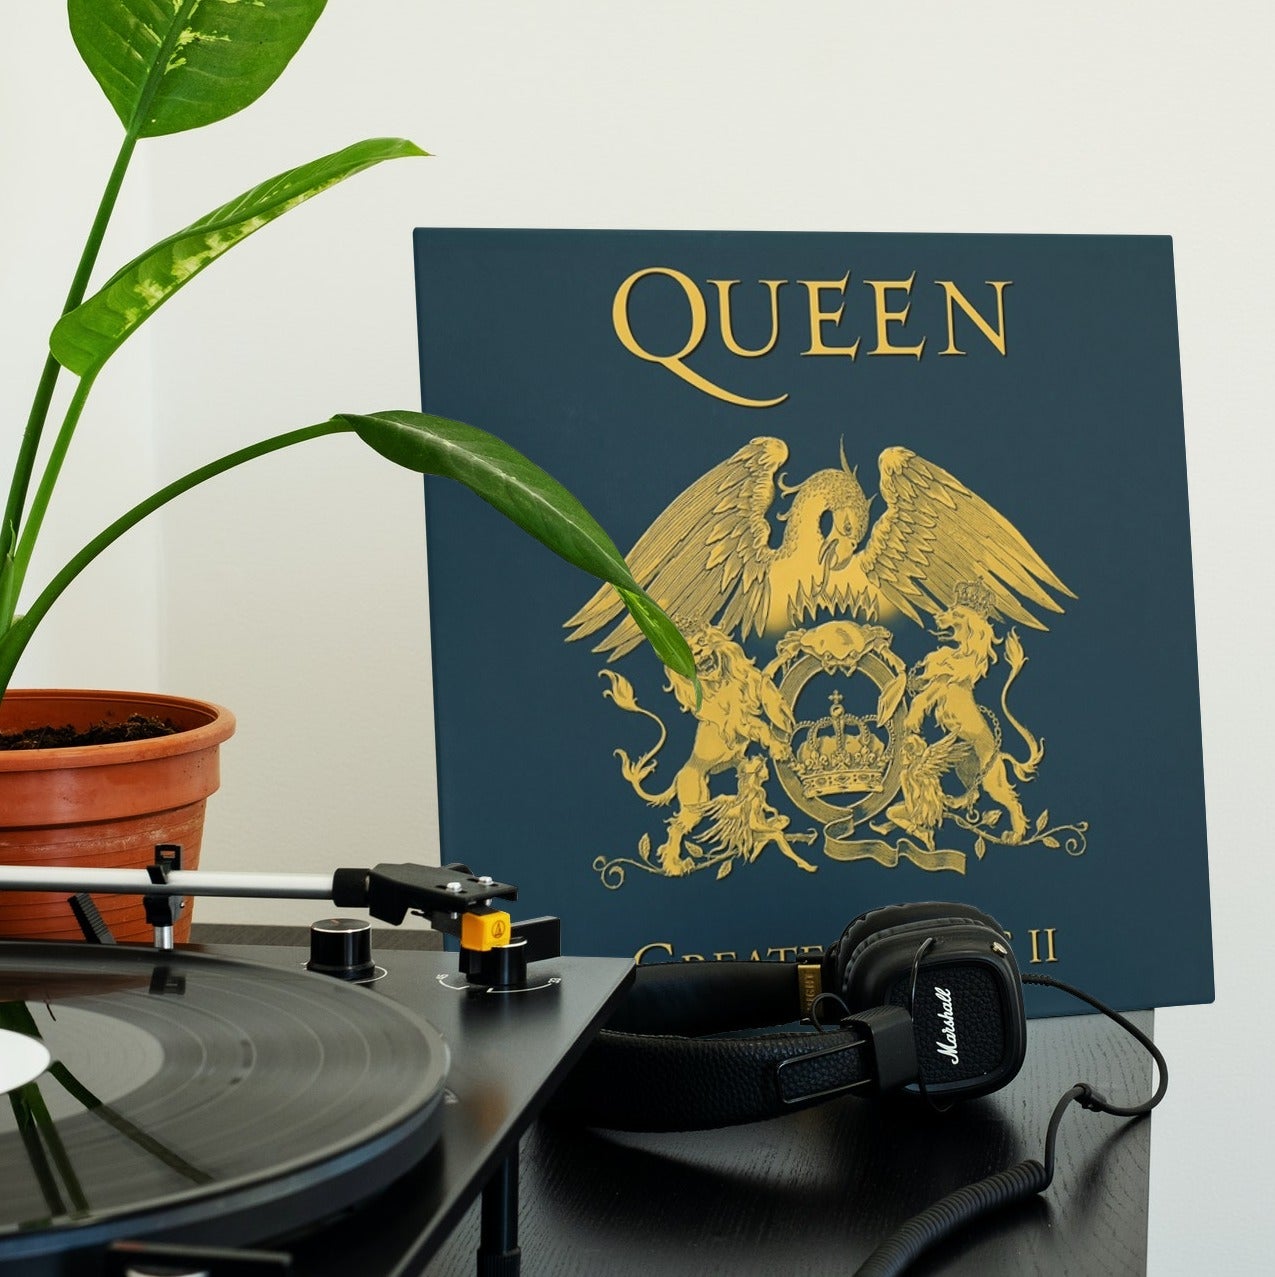 queen greatest hits ii - 2 lp vinilo del año 19 - Compra venta en  todocoleccion